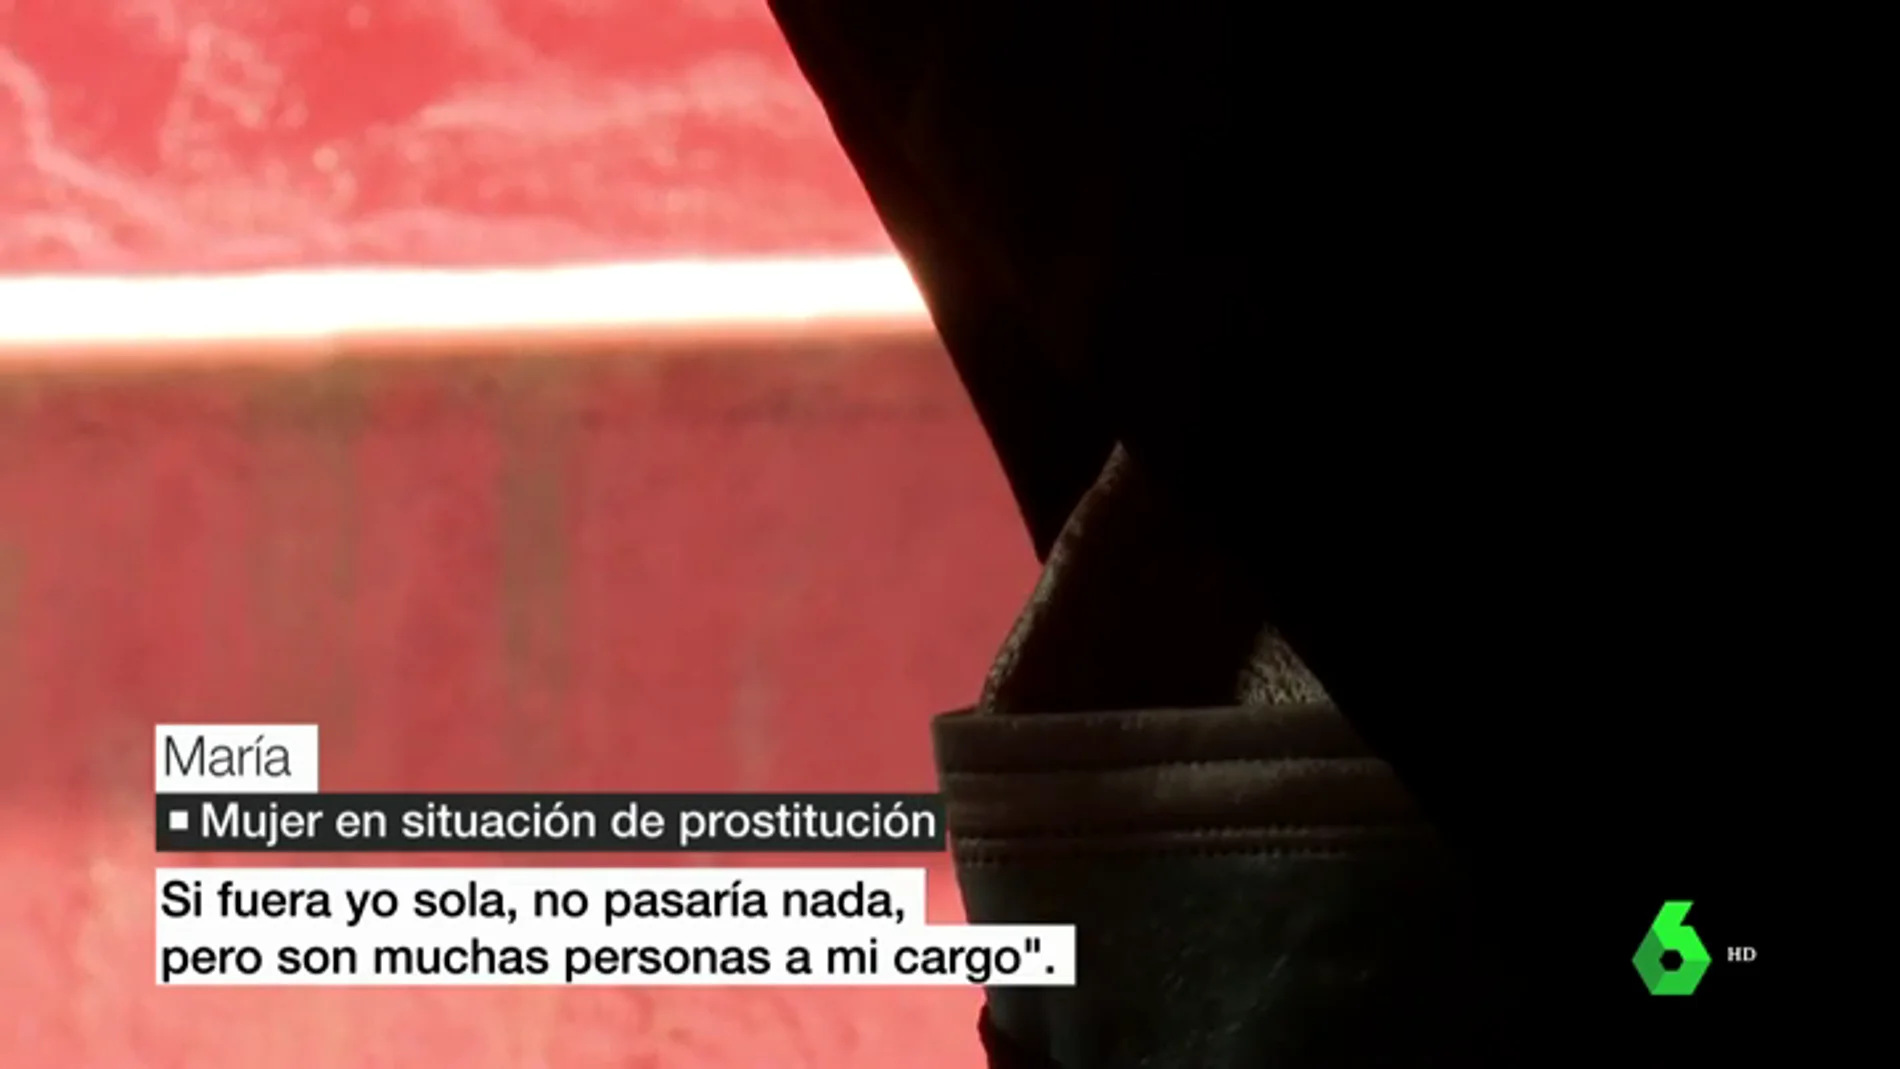 Prostitucion